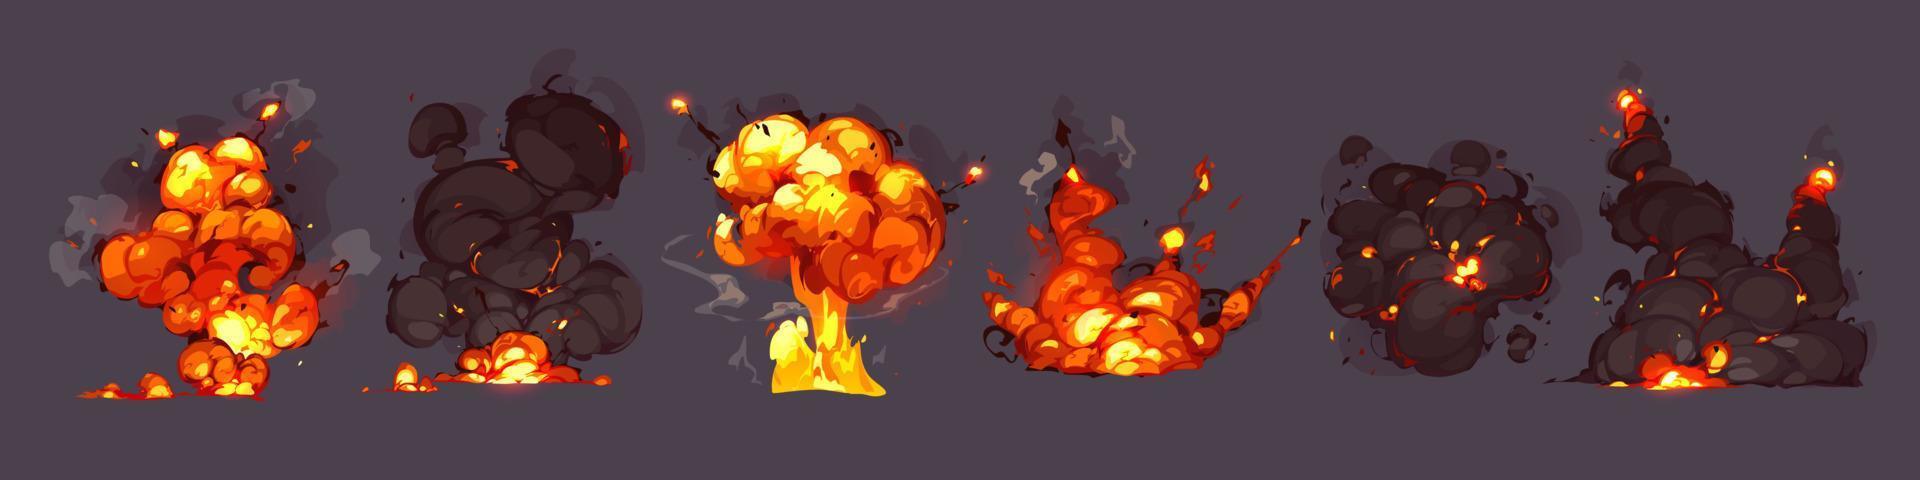 Bombenexplosionen, Explosionen mit Feuer und Rauchwolken vektor